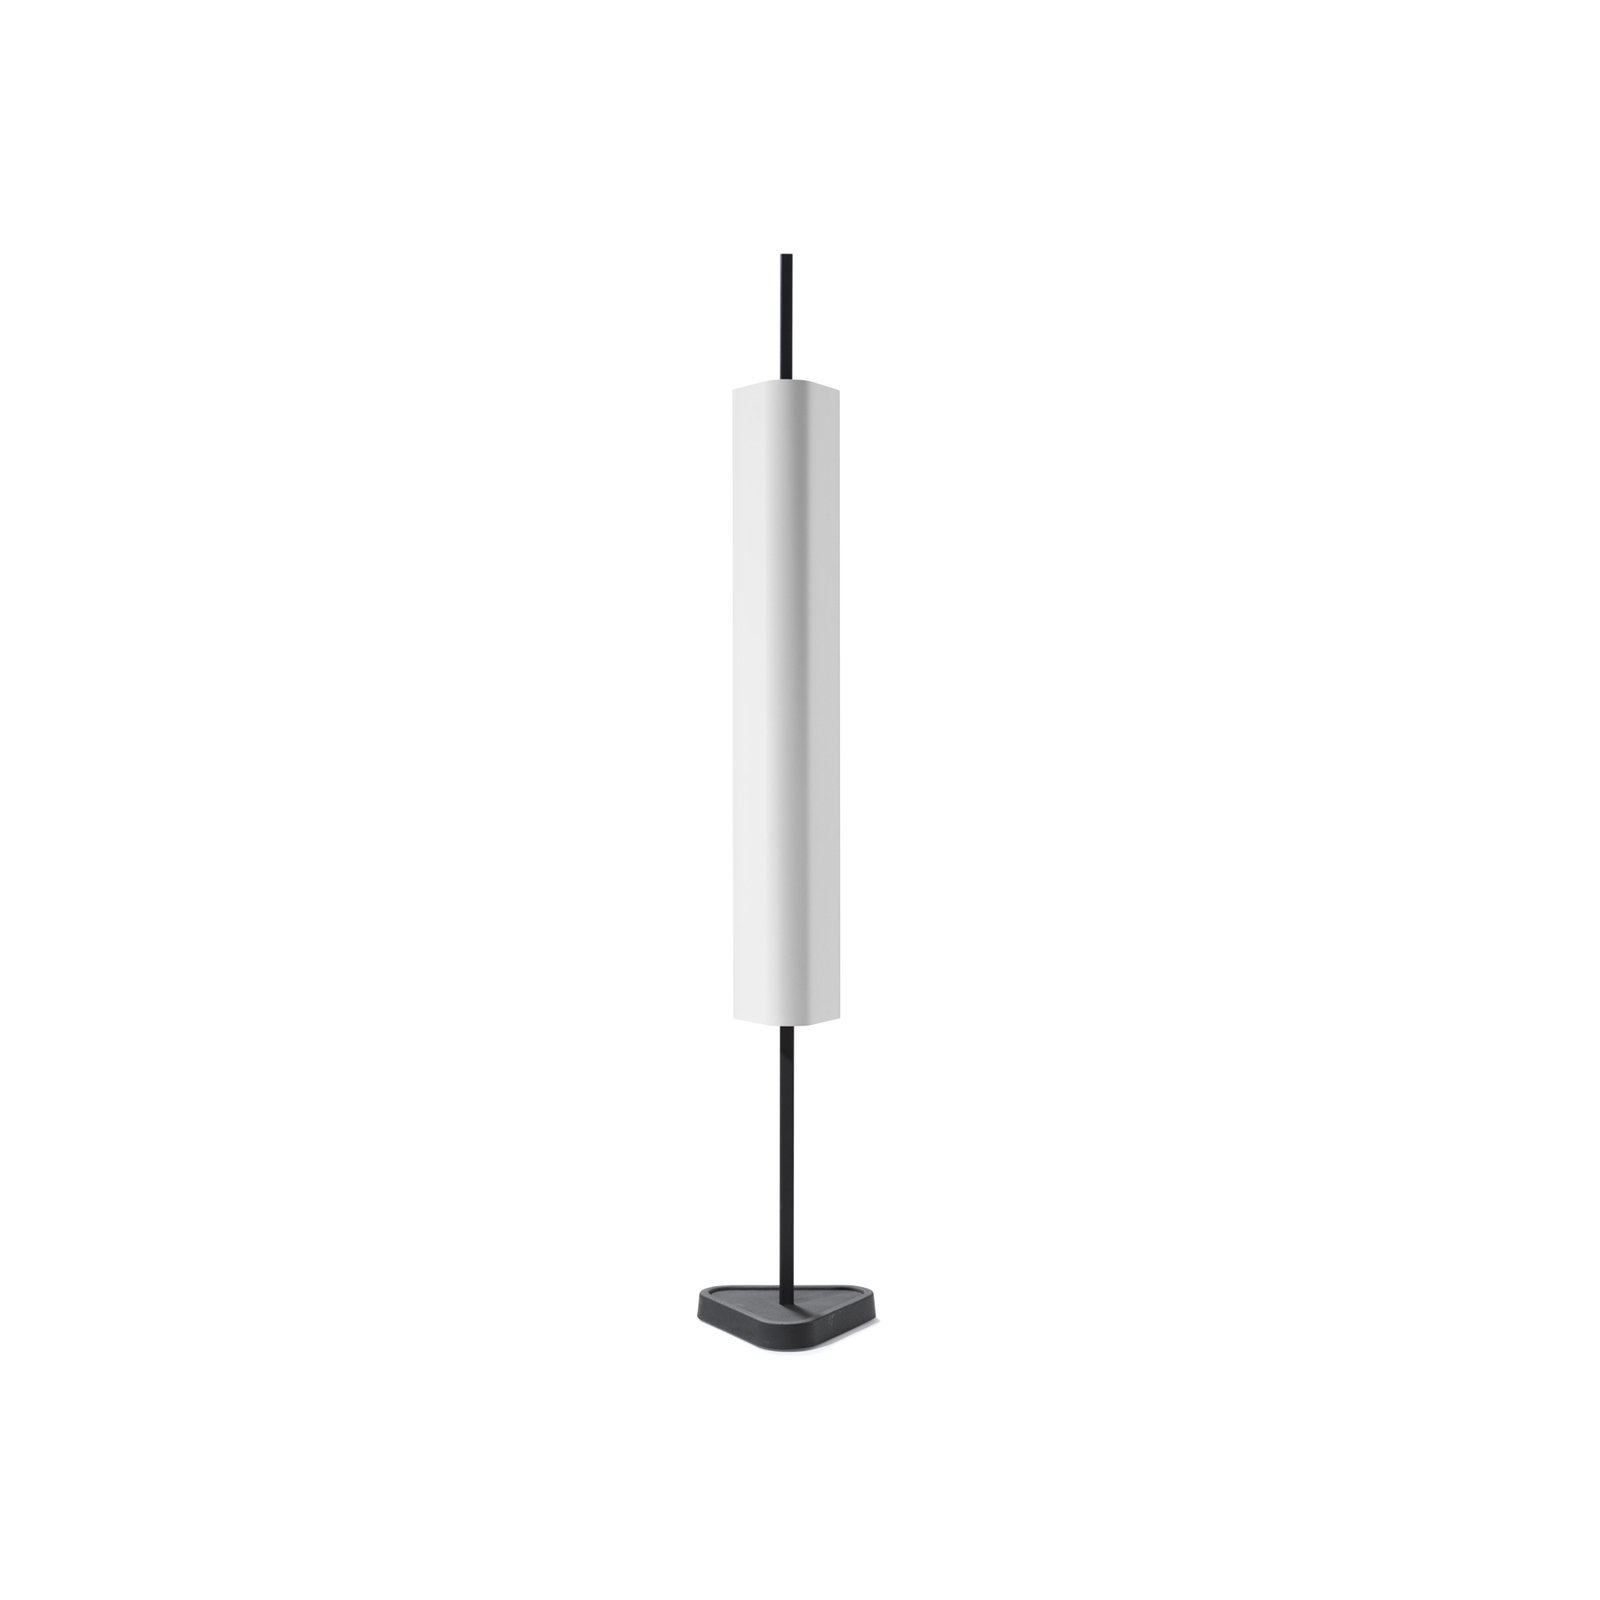 FLOS Emi LED-pöytävalaisin, valkoinen, korkeus 114 cm, himmennettävä